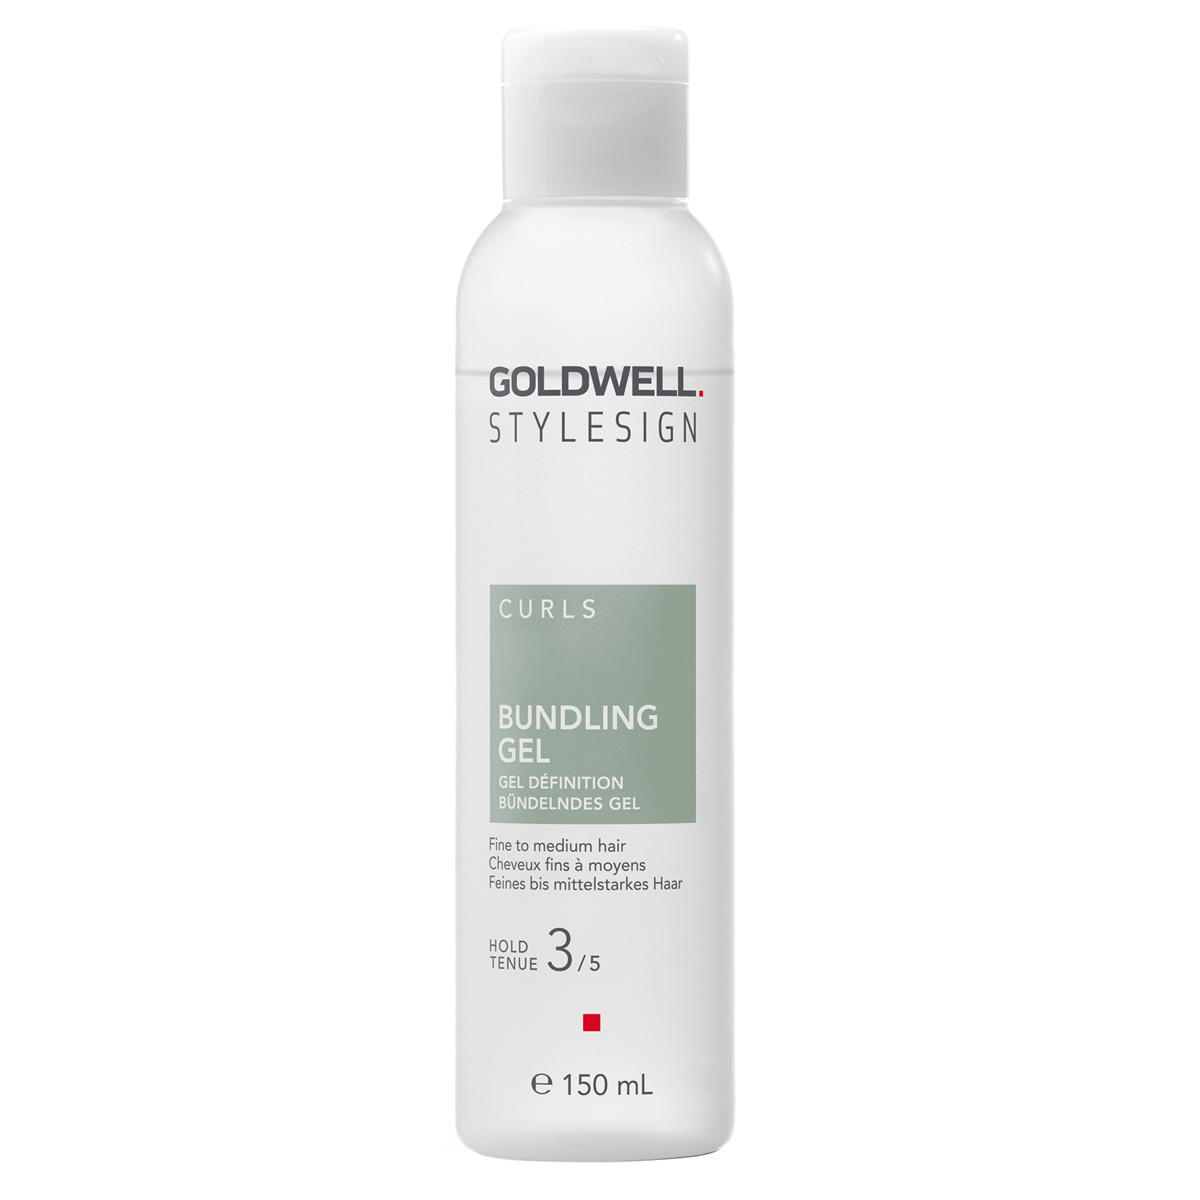 Goldwell StyleSign Curls Gel per impacchettare starker Halt 150 ml - 1